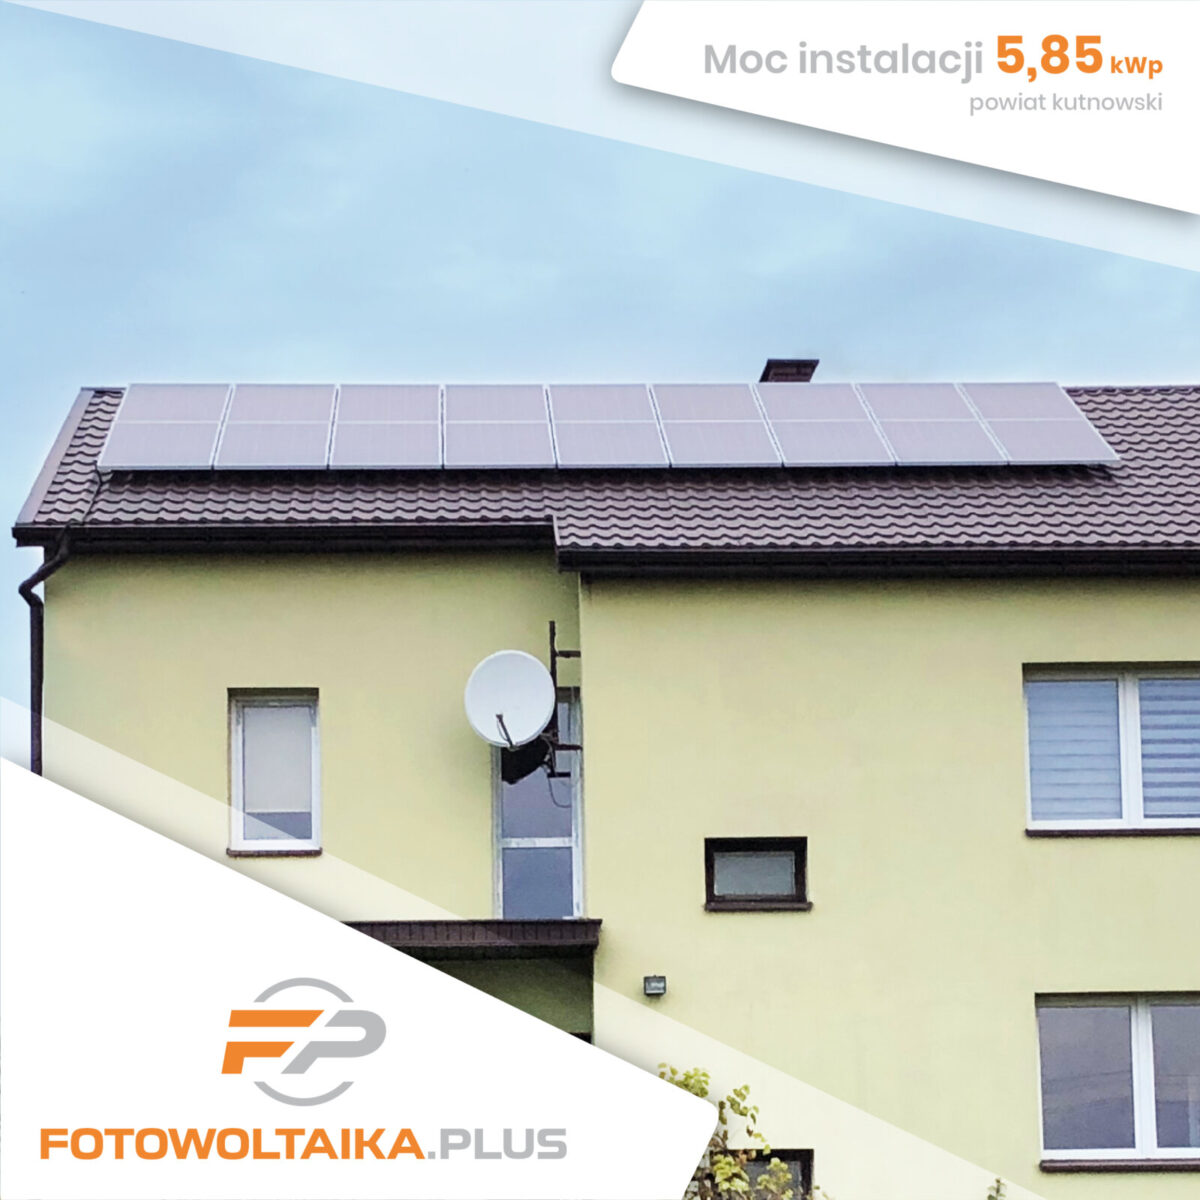 Instalacja fotowoltaiczna powiat kutnowski 5,85 kWp